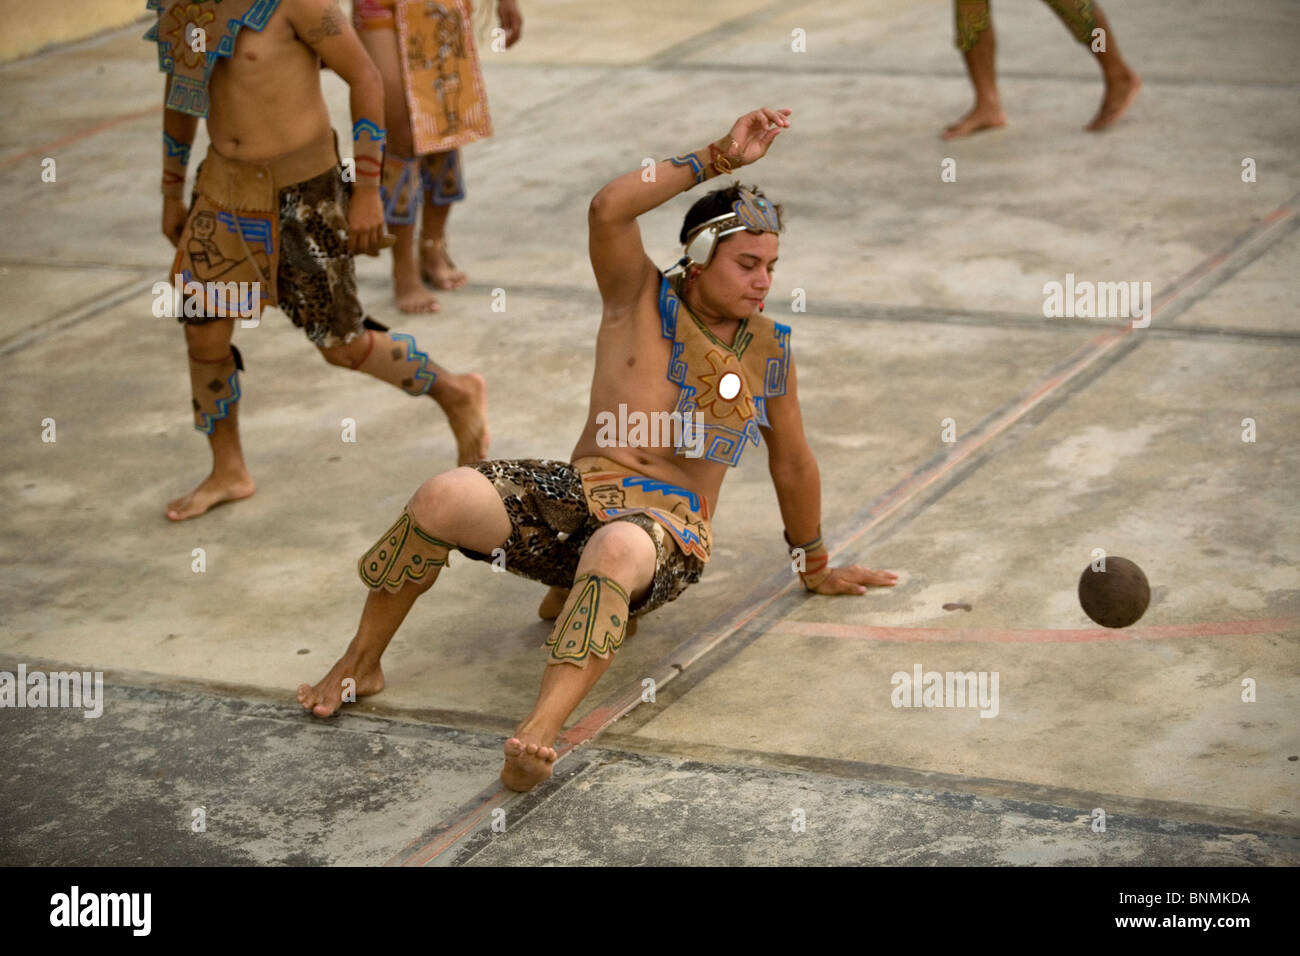 Un joueur frappe la balle avec la hanche lors d'un match de jeu de balle  maya, connu sous le nom de Pok Ta Pok, dans Chapab, péninsule du Yucatan,  Mexique Photo Stock 